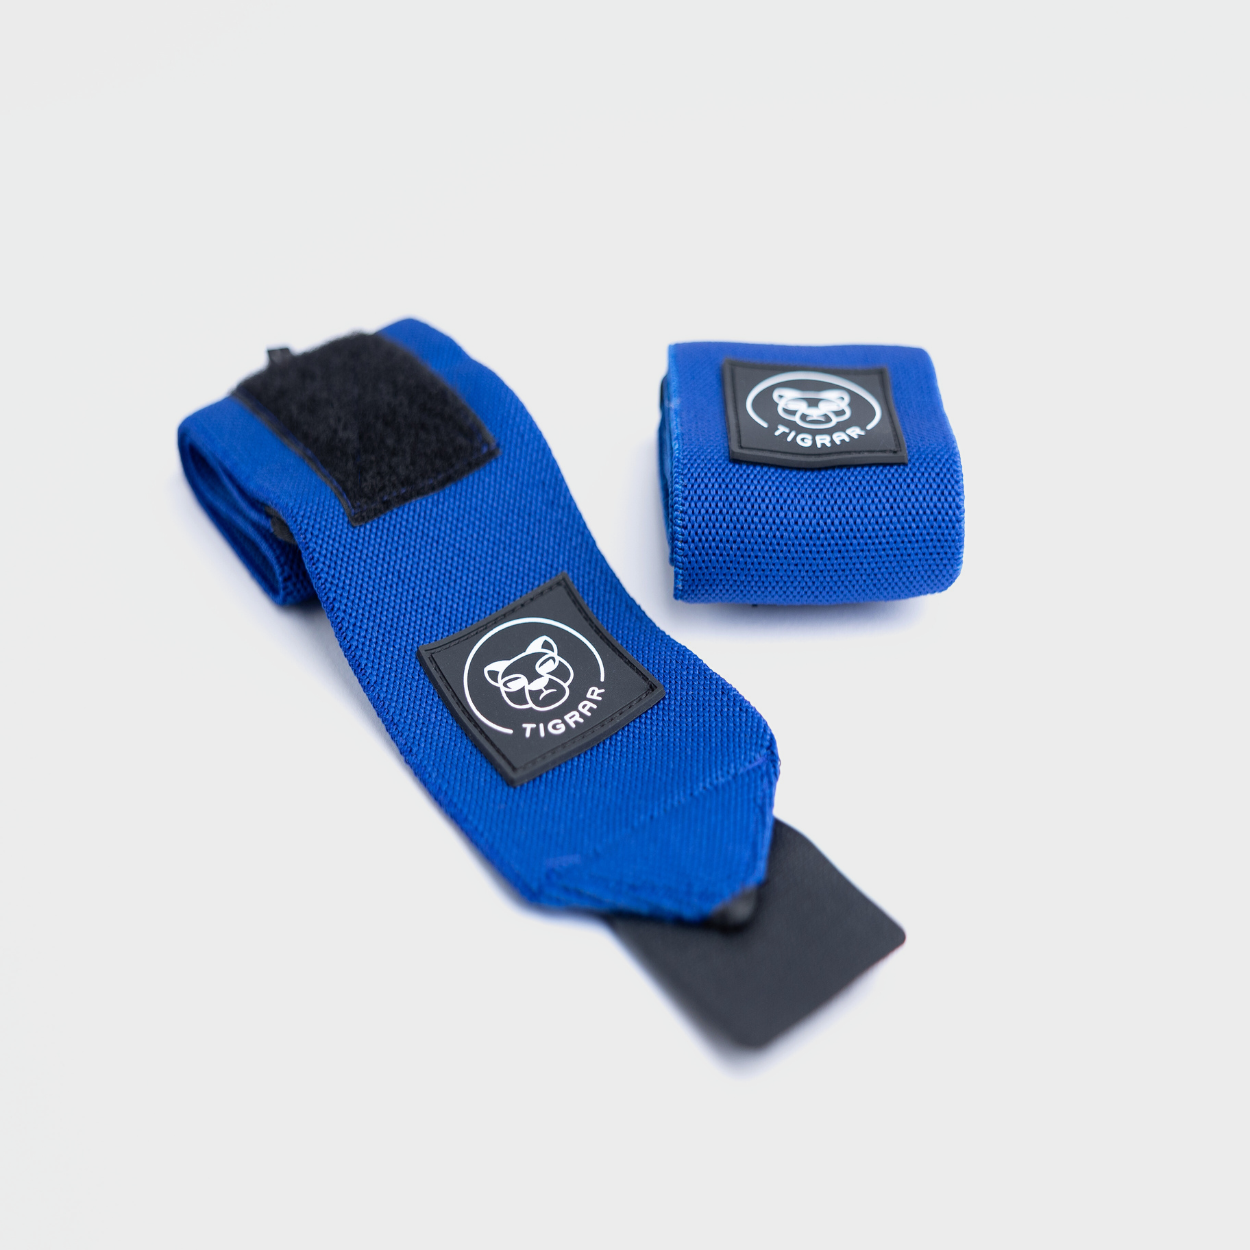 Blauwe Tigrar wrist wraps voor extra polssteun, perfect voor krachttraining